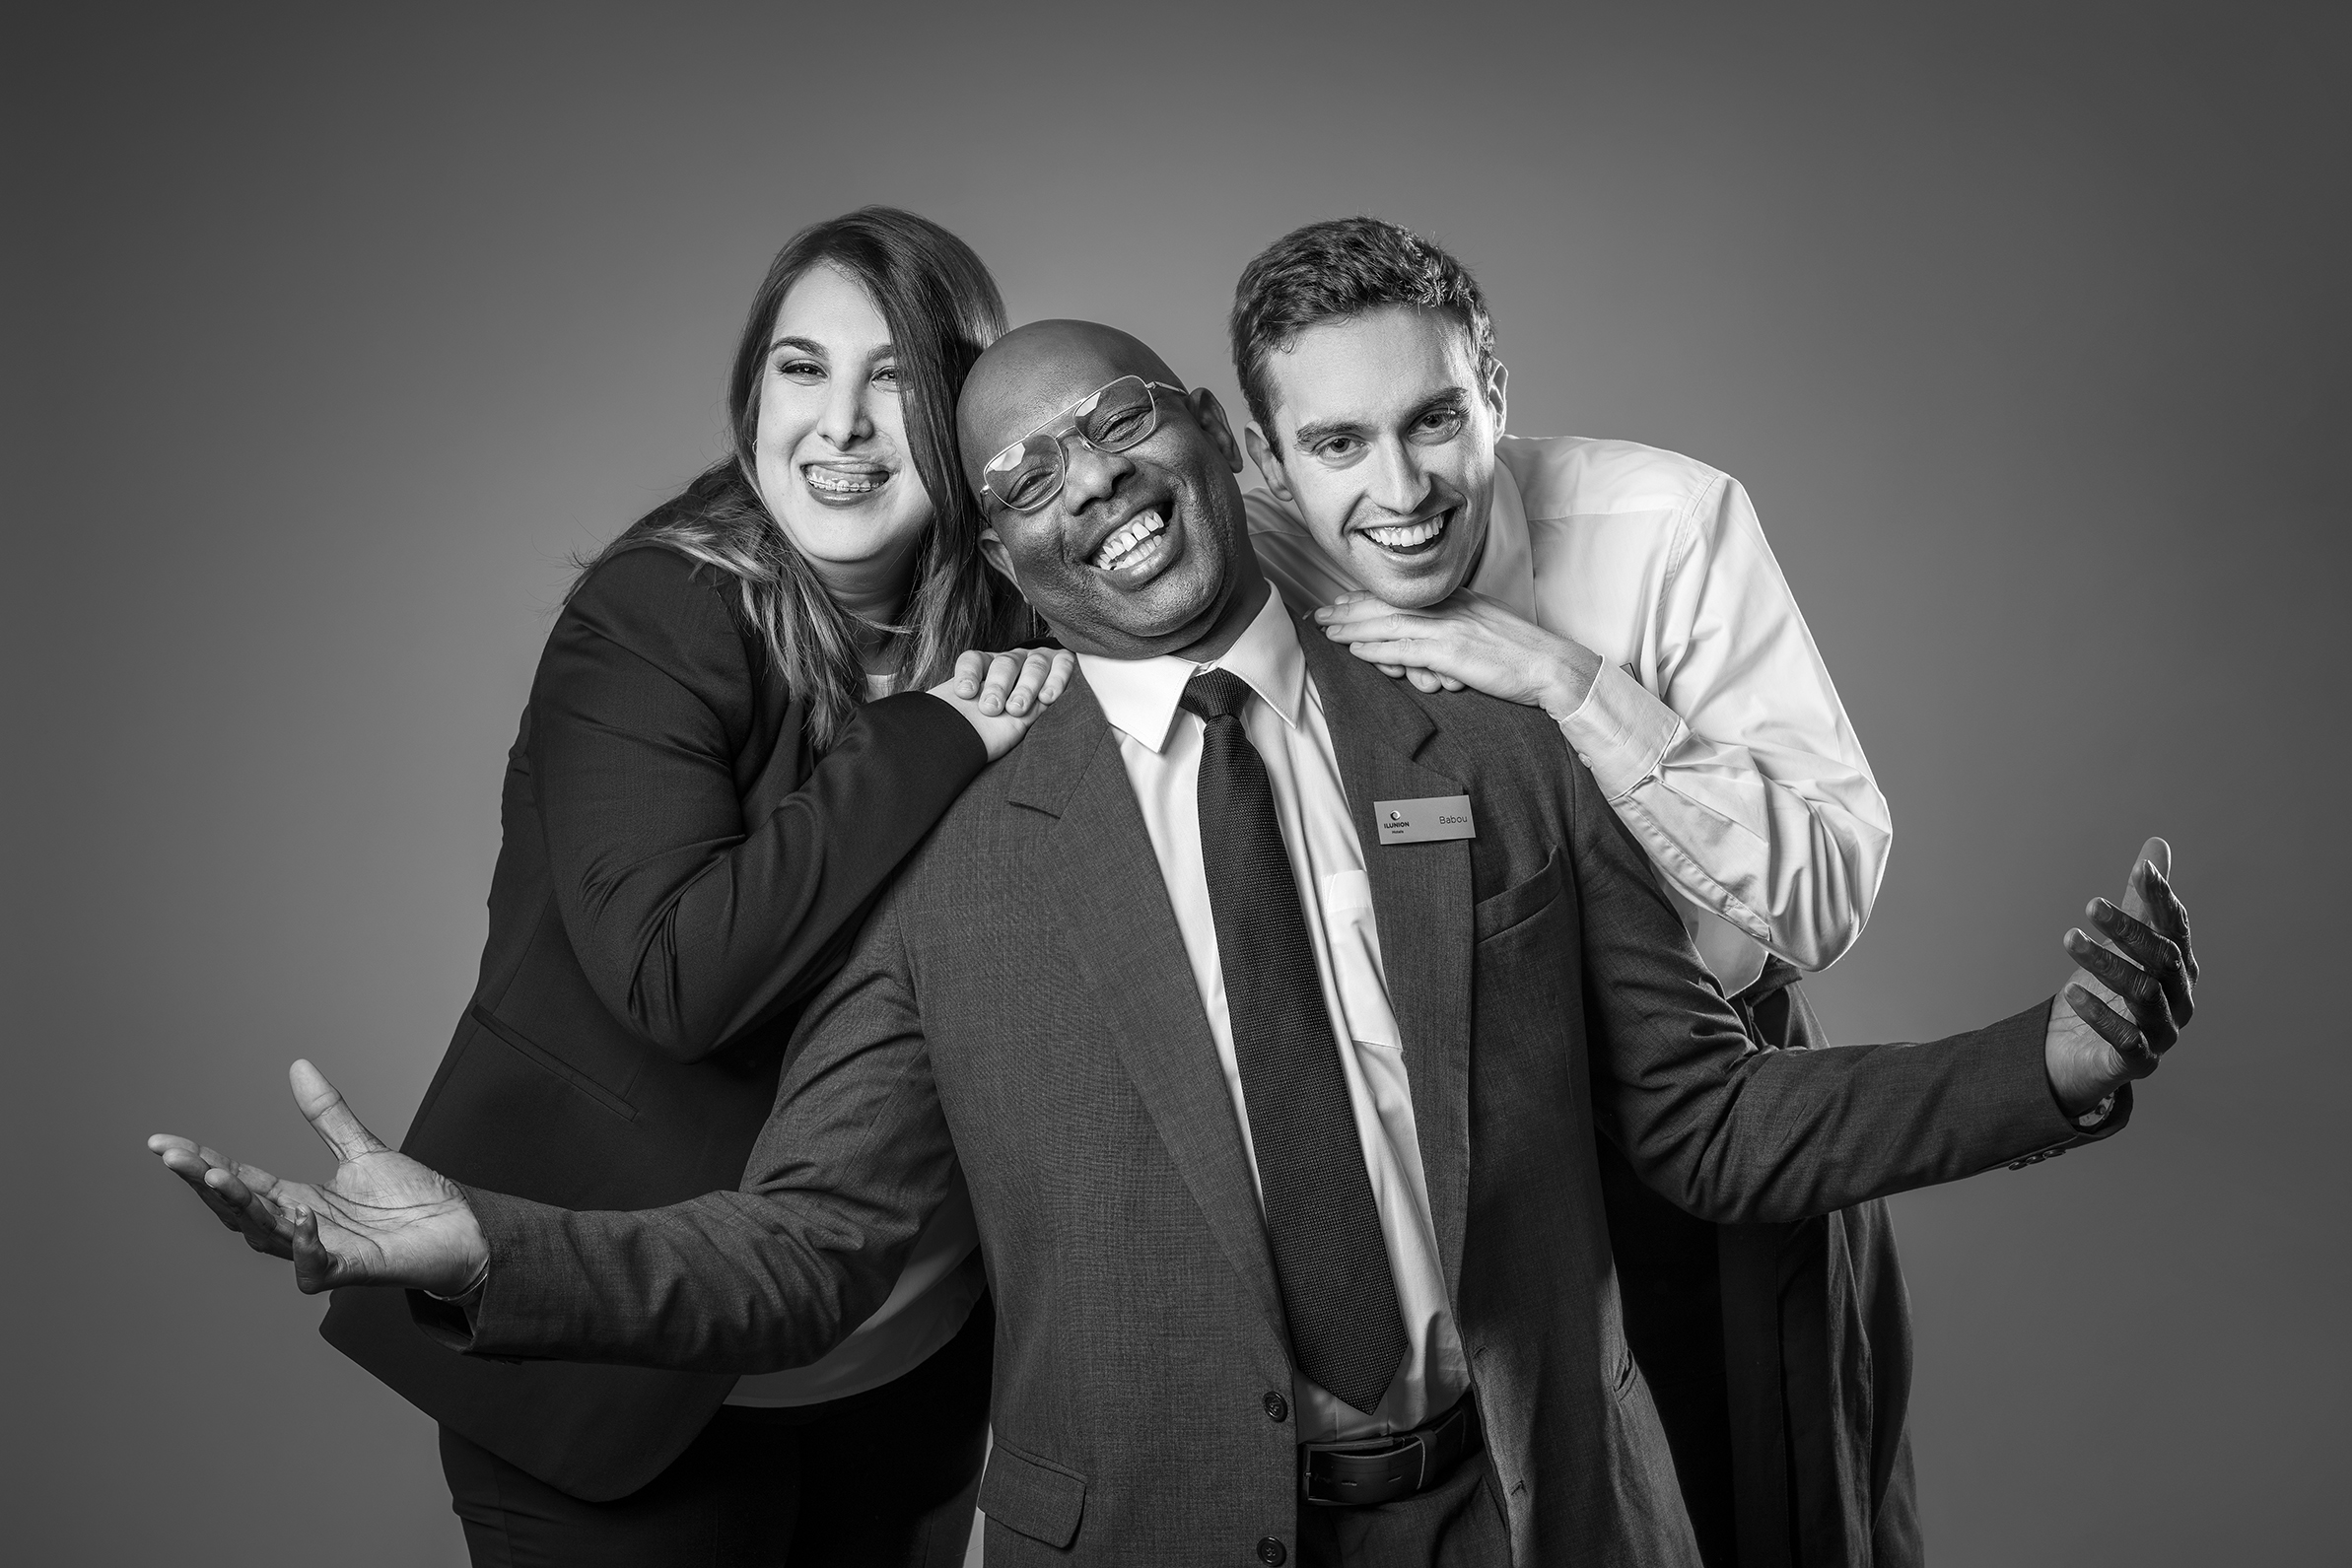 Fotografía en blanco y negro en la que aparecen tres personas sonriendo